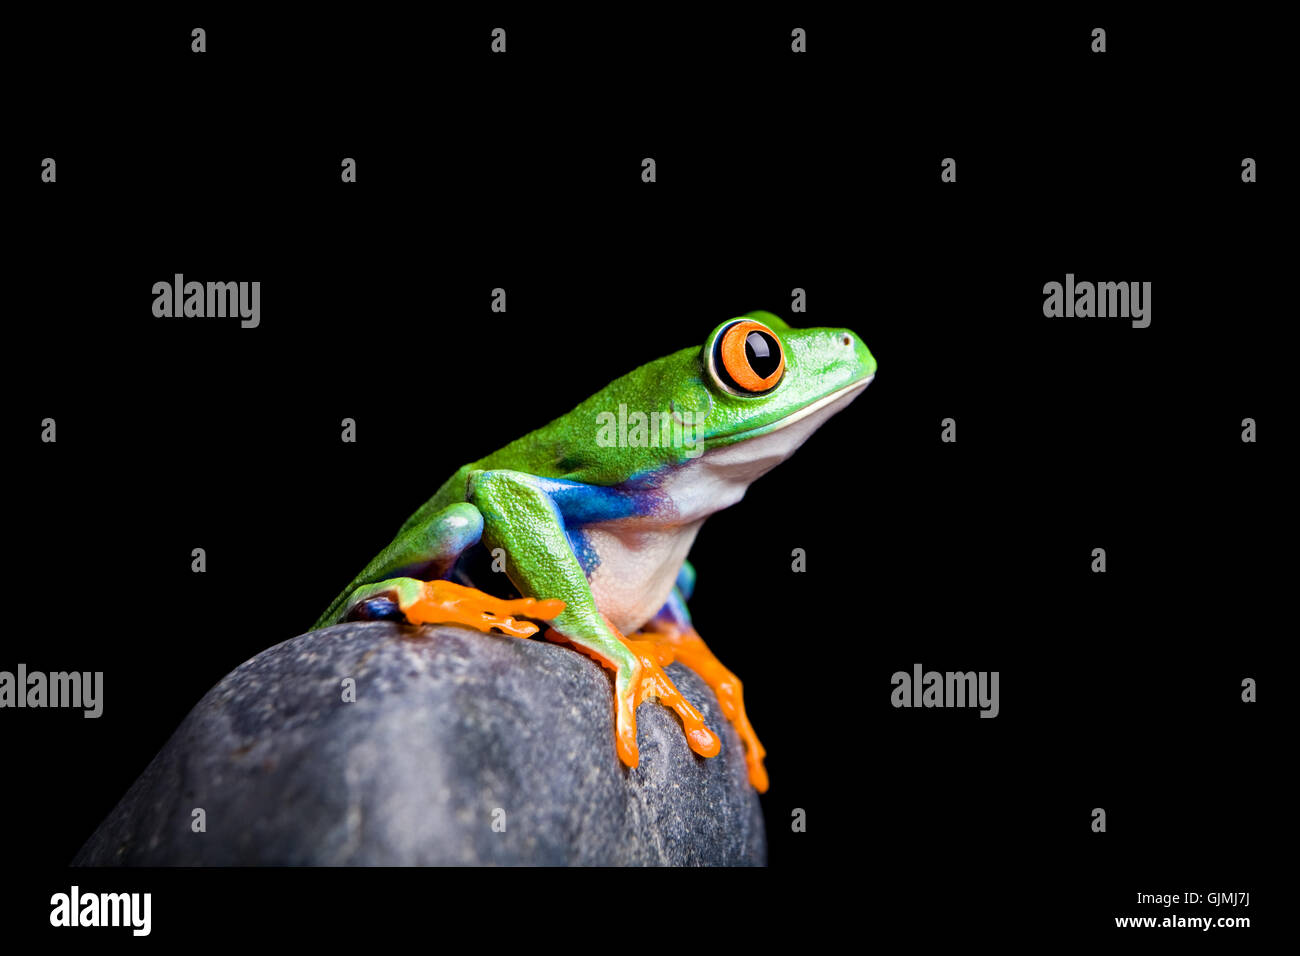 isolierten tierischen Amphibien Stockfoto